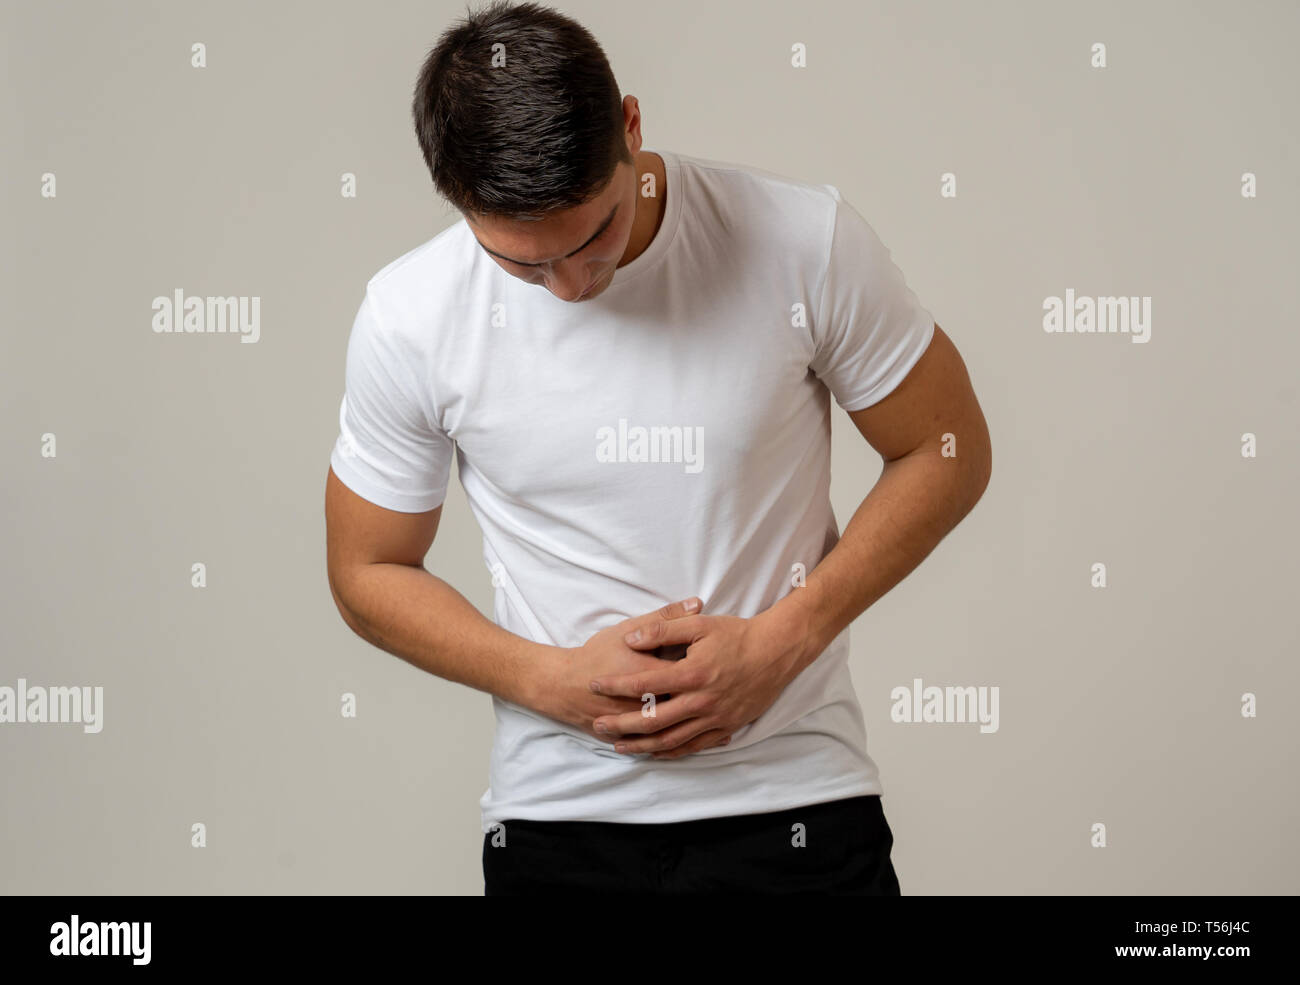 Fitness muscular joven hombre sujetando su estómago sufriendo fuertes dolores abdominales. Aislado sobre fondo neutro. En dolor de estómago, problemas digestivos y Foto de stock